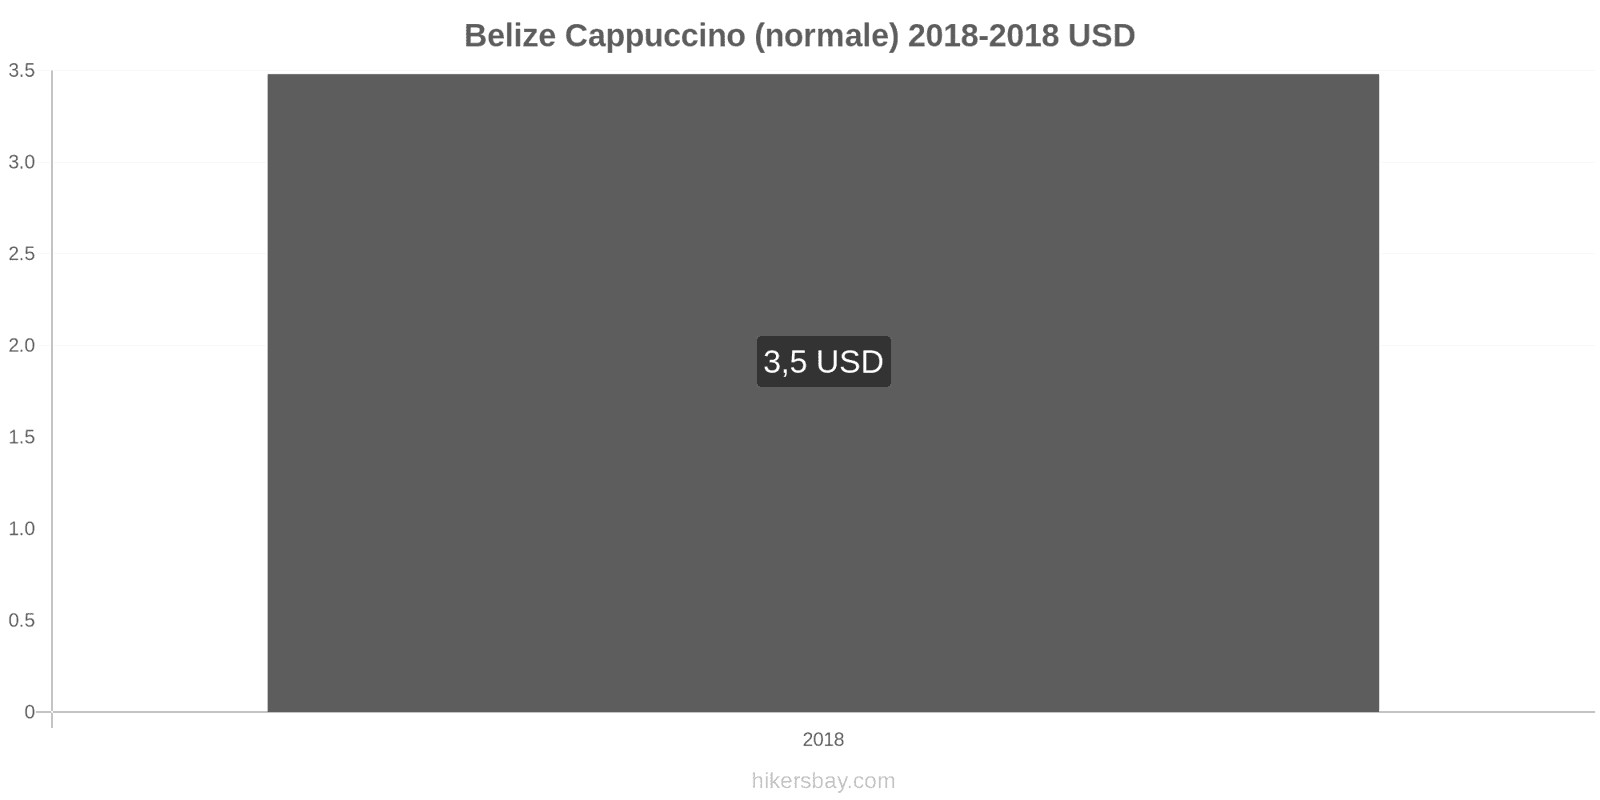 Belize cambi di prezzo Cappuccino hikersbay.com